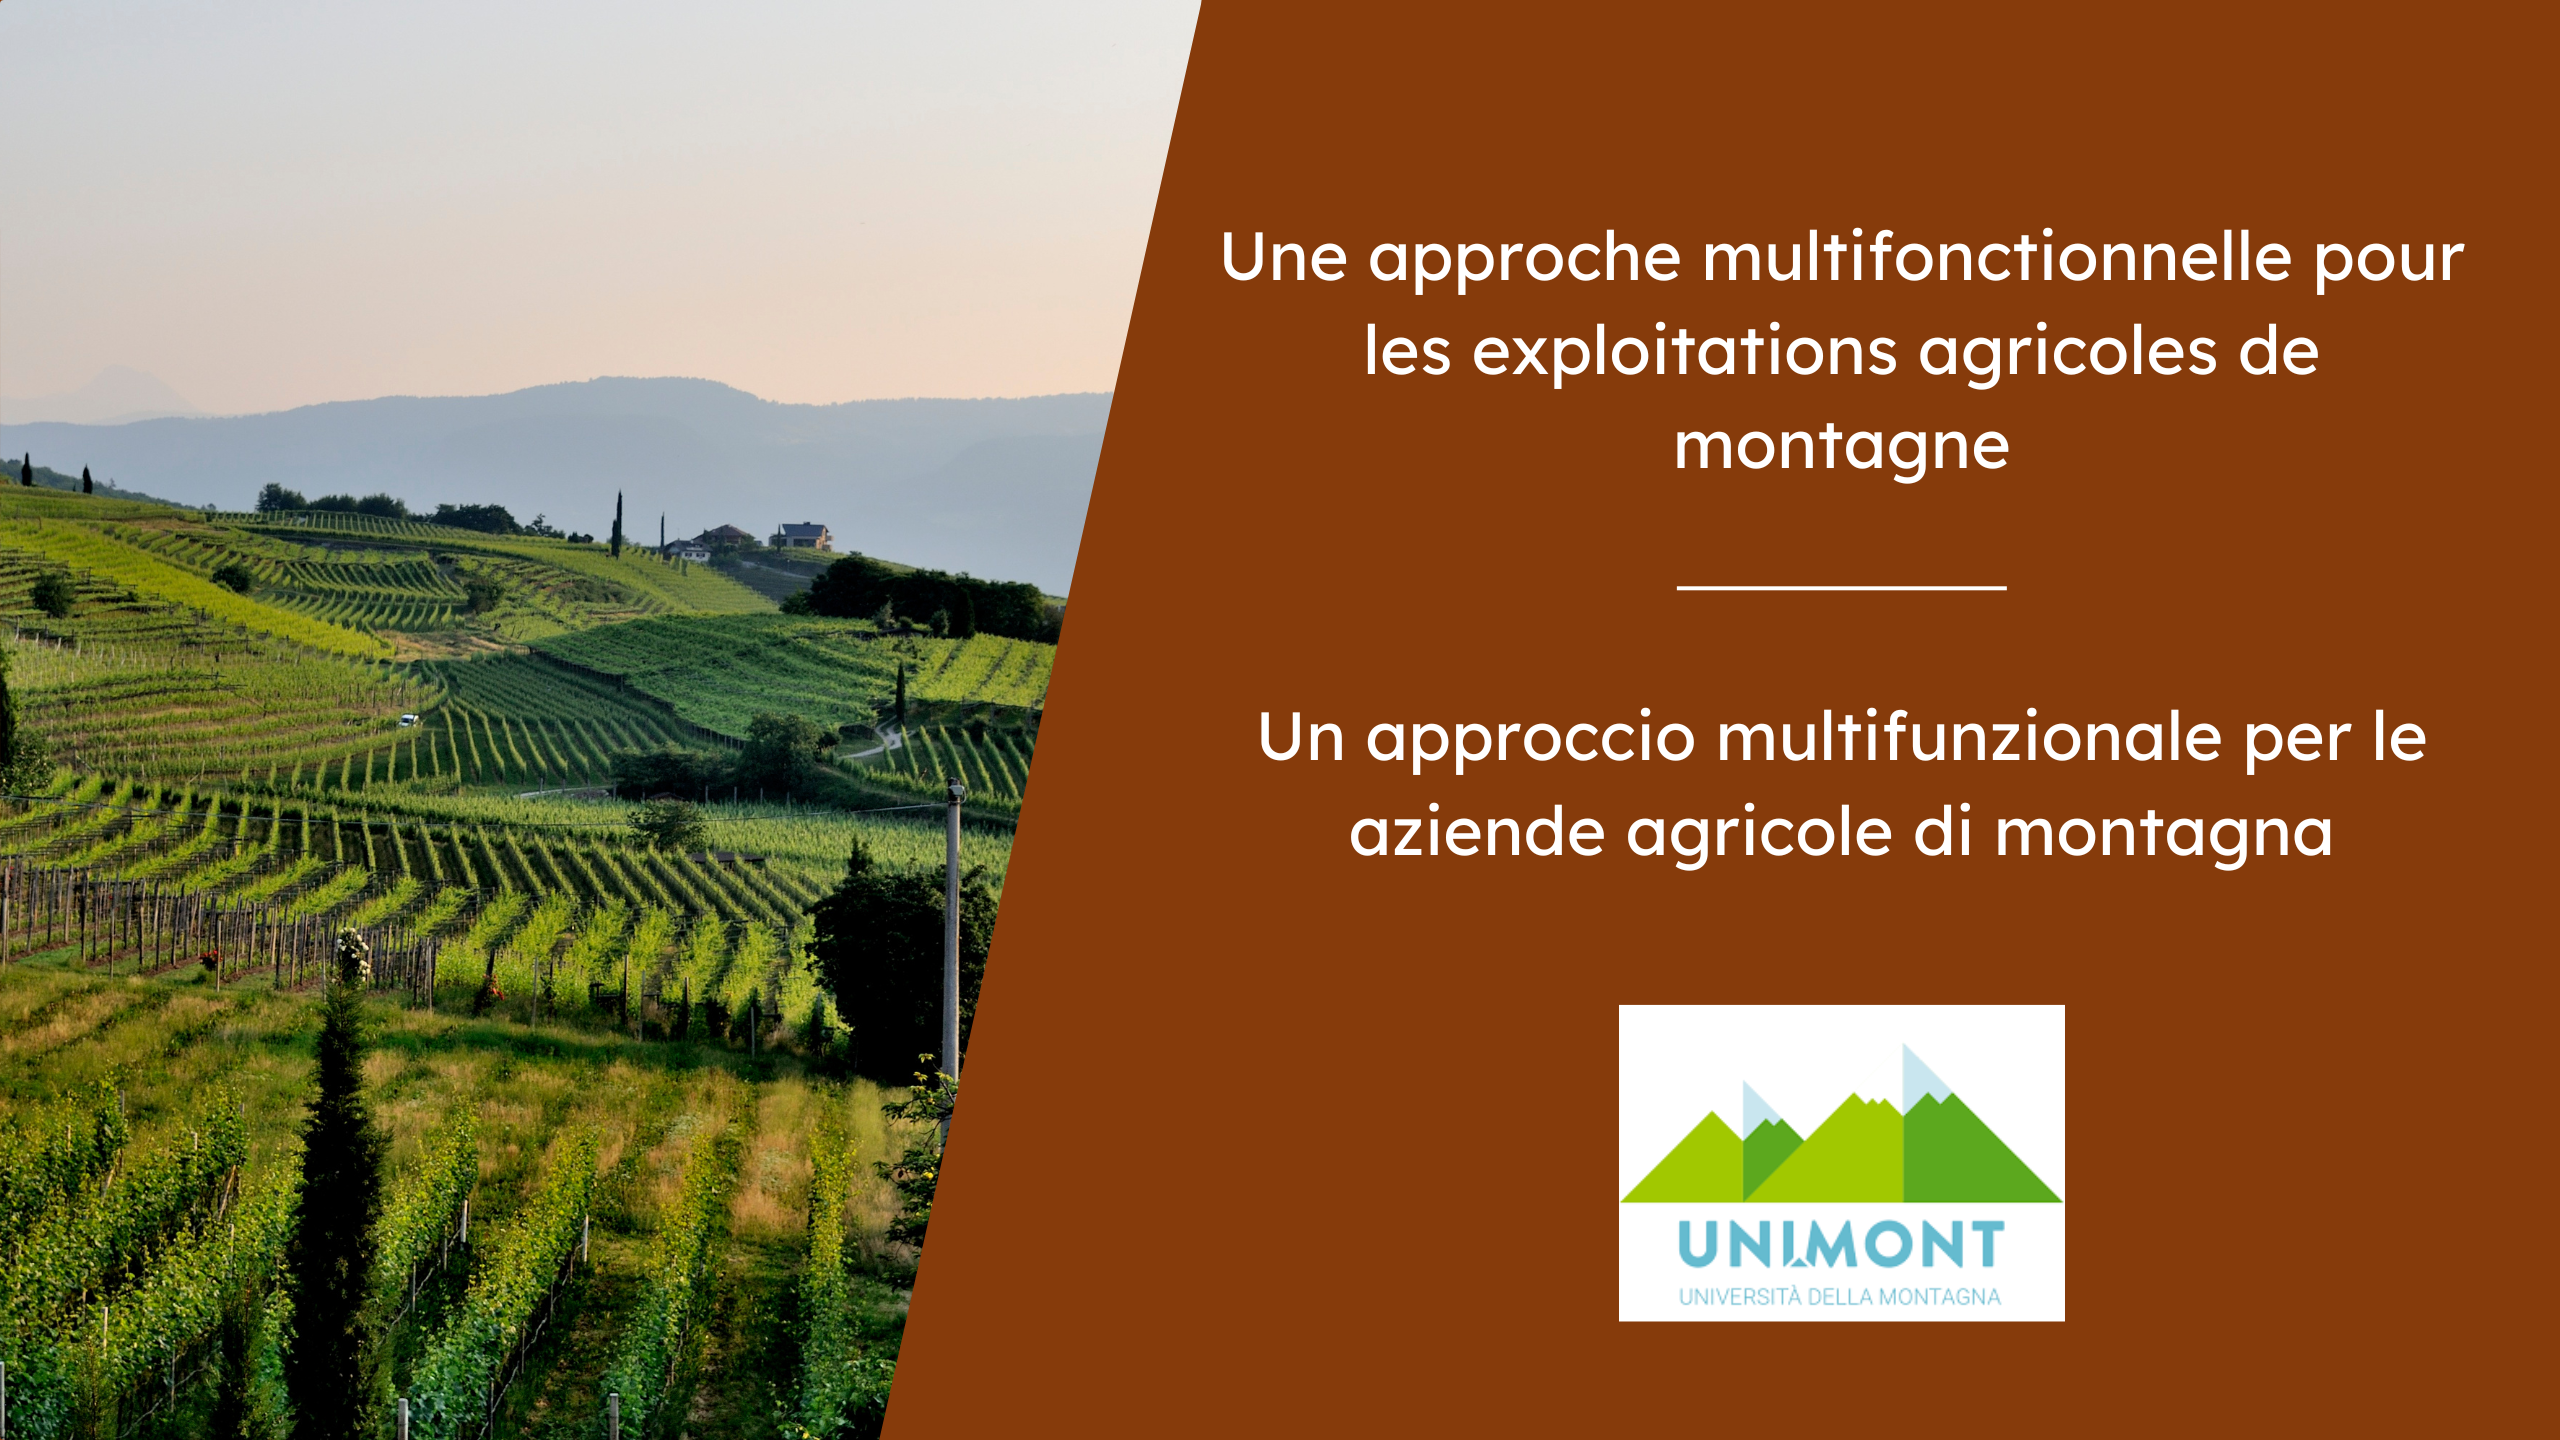 Un approccio multifunzionale per le aziende agricole di montagna